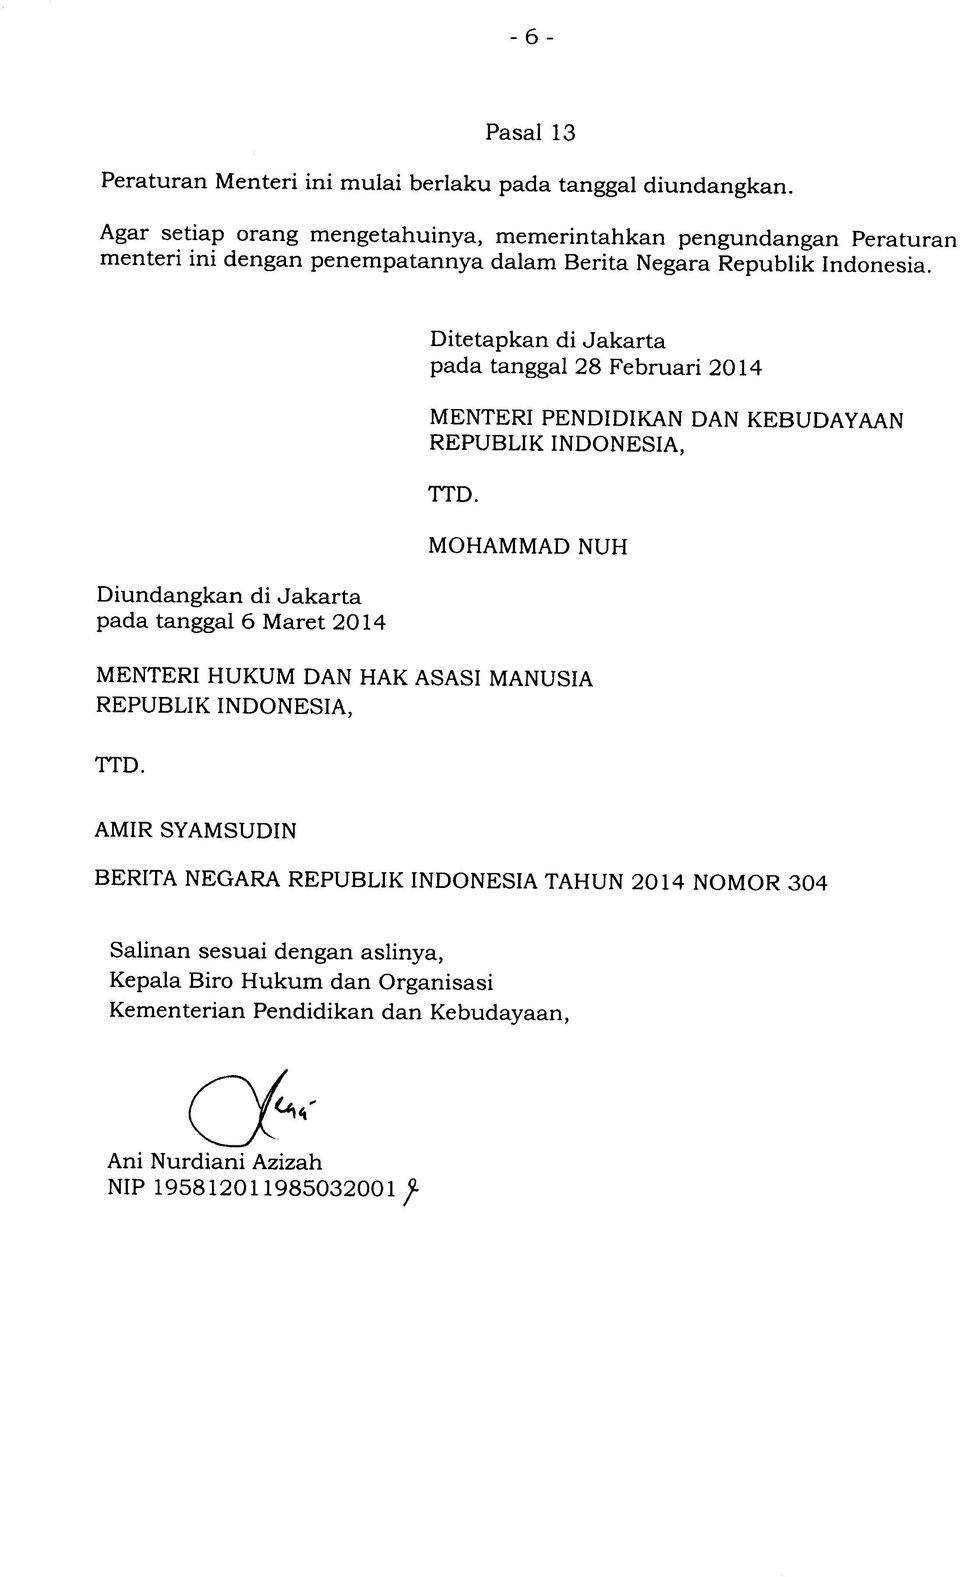 Ditetapkan di Jakarta pada tanggal 28 Februari 2014 MENTERI PENDIDIKAN DAN REPUBLIK INDONESIA, KEBUDAYAAN TTD.